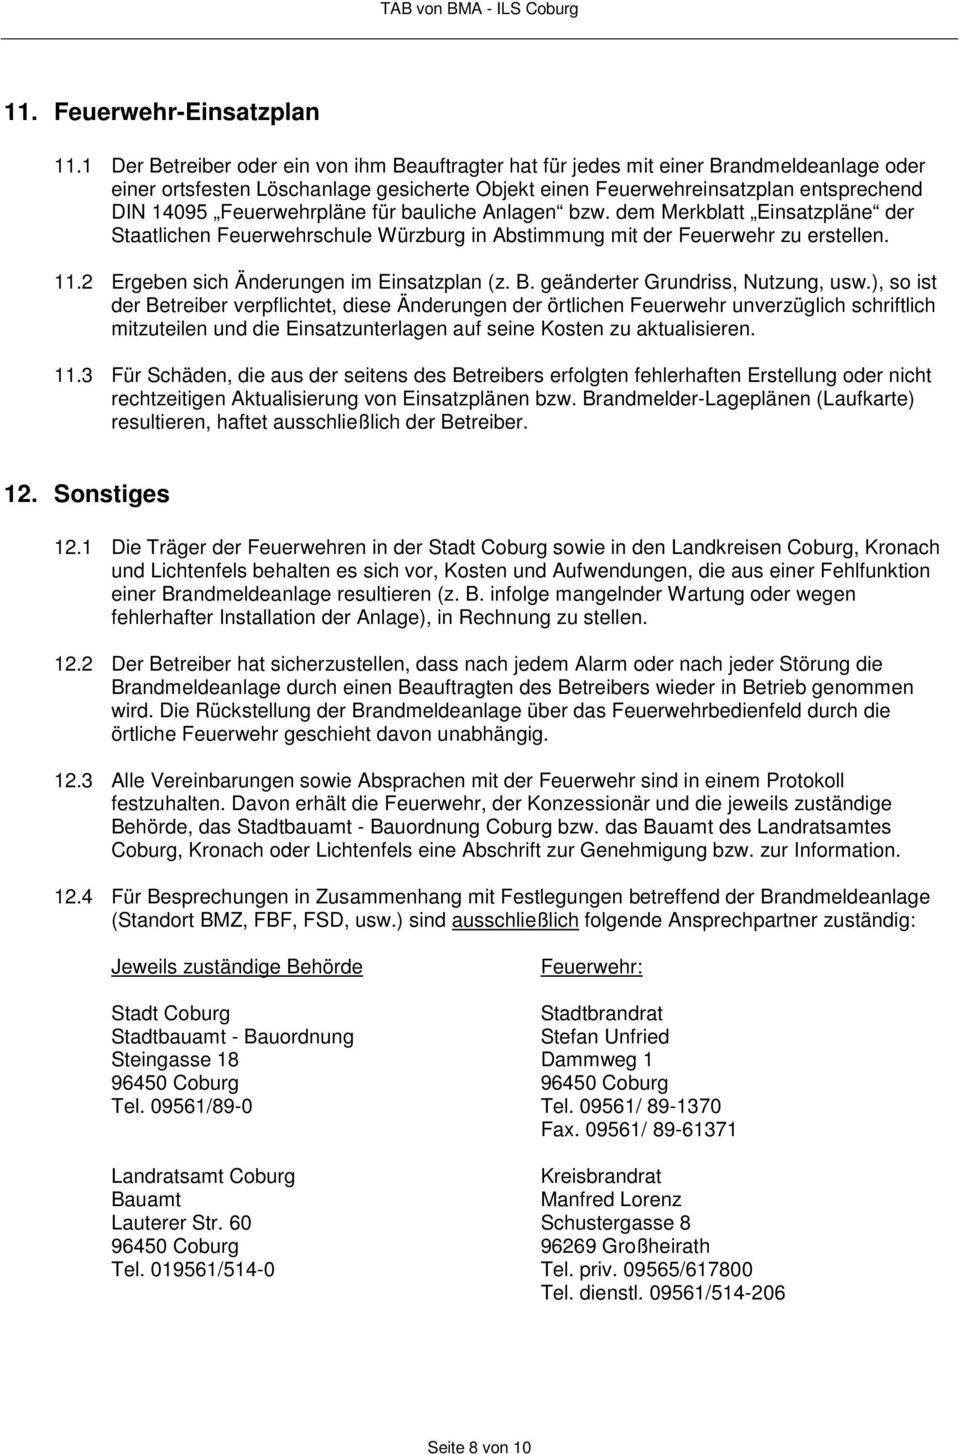 Feuerwehrpläne für bauliche Anlagen bzw. dem Merkblatt Einsatzpläne der Staatlichen Feuerwehrschule Würzburg in Abstimmung mit der Feuerwehr zu erstellen. 11.